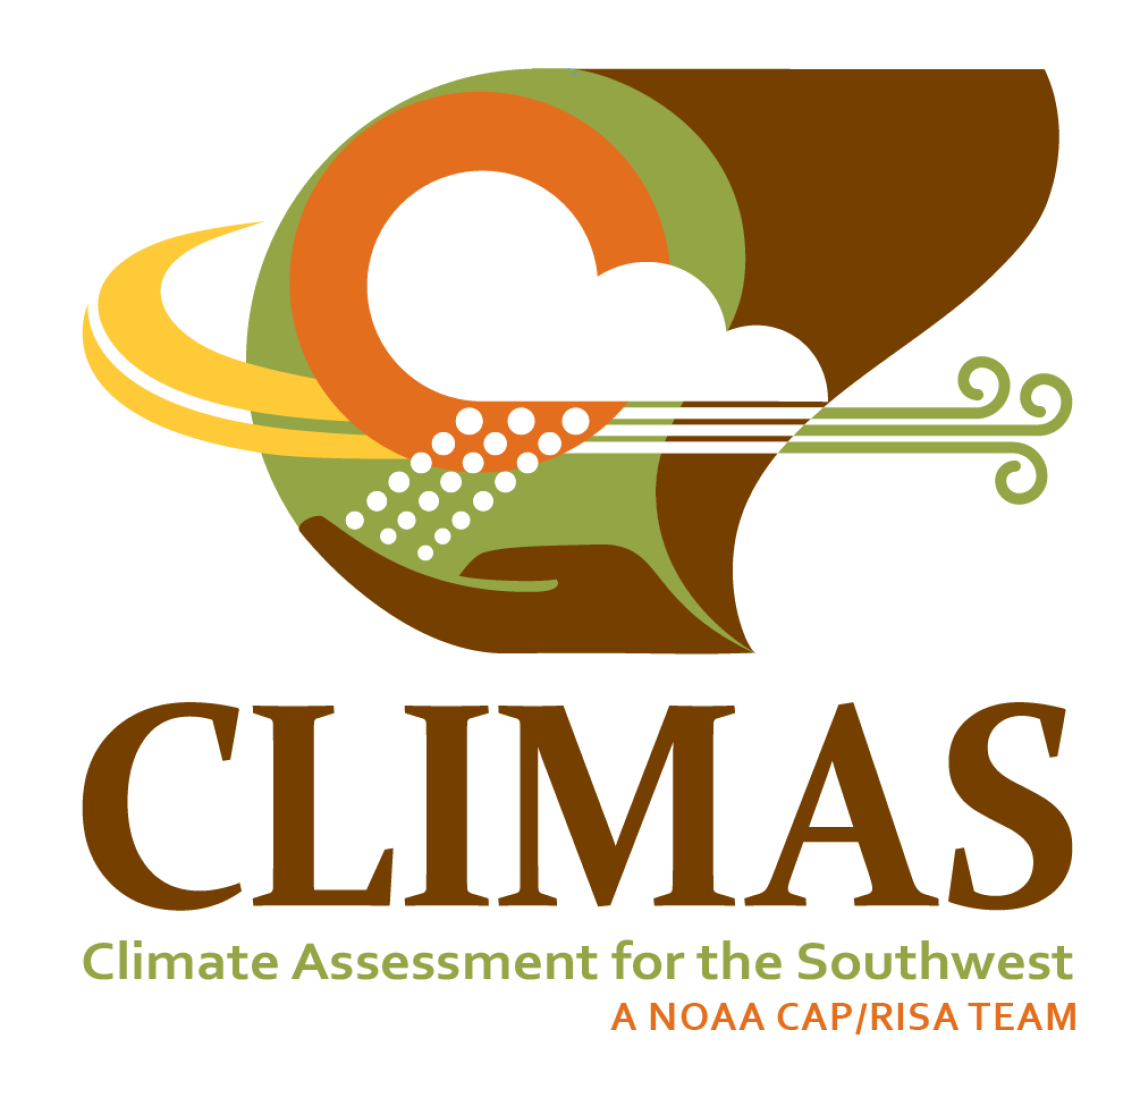 CLIMAS square logo white background